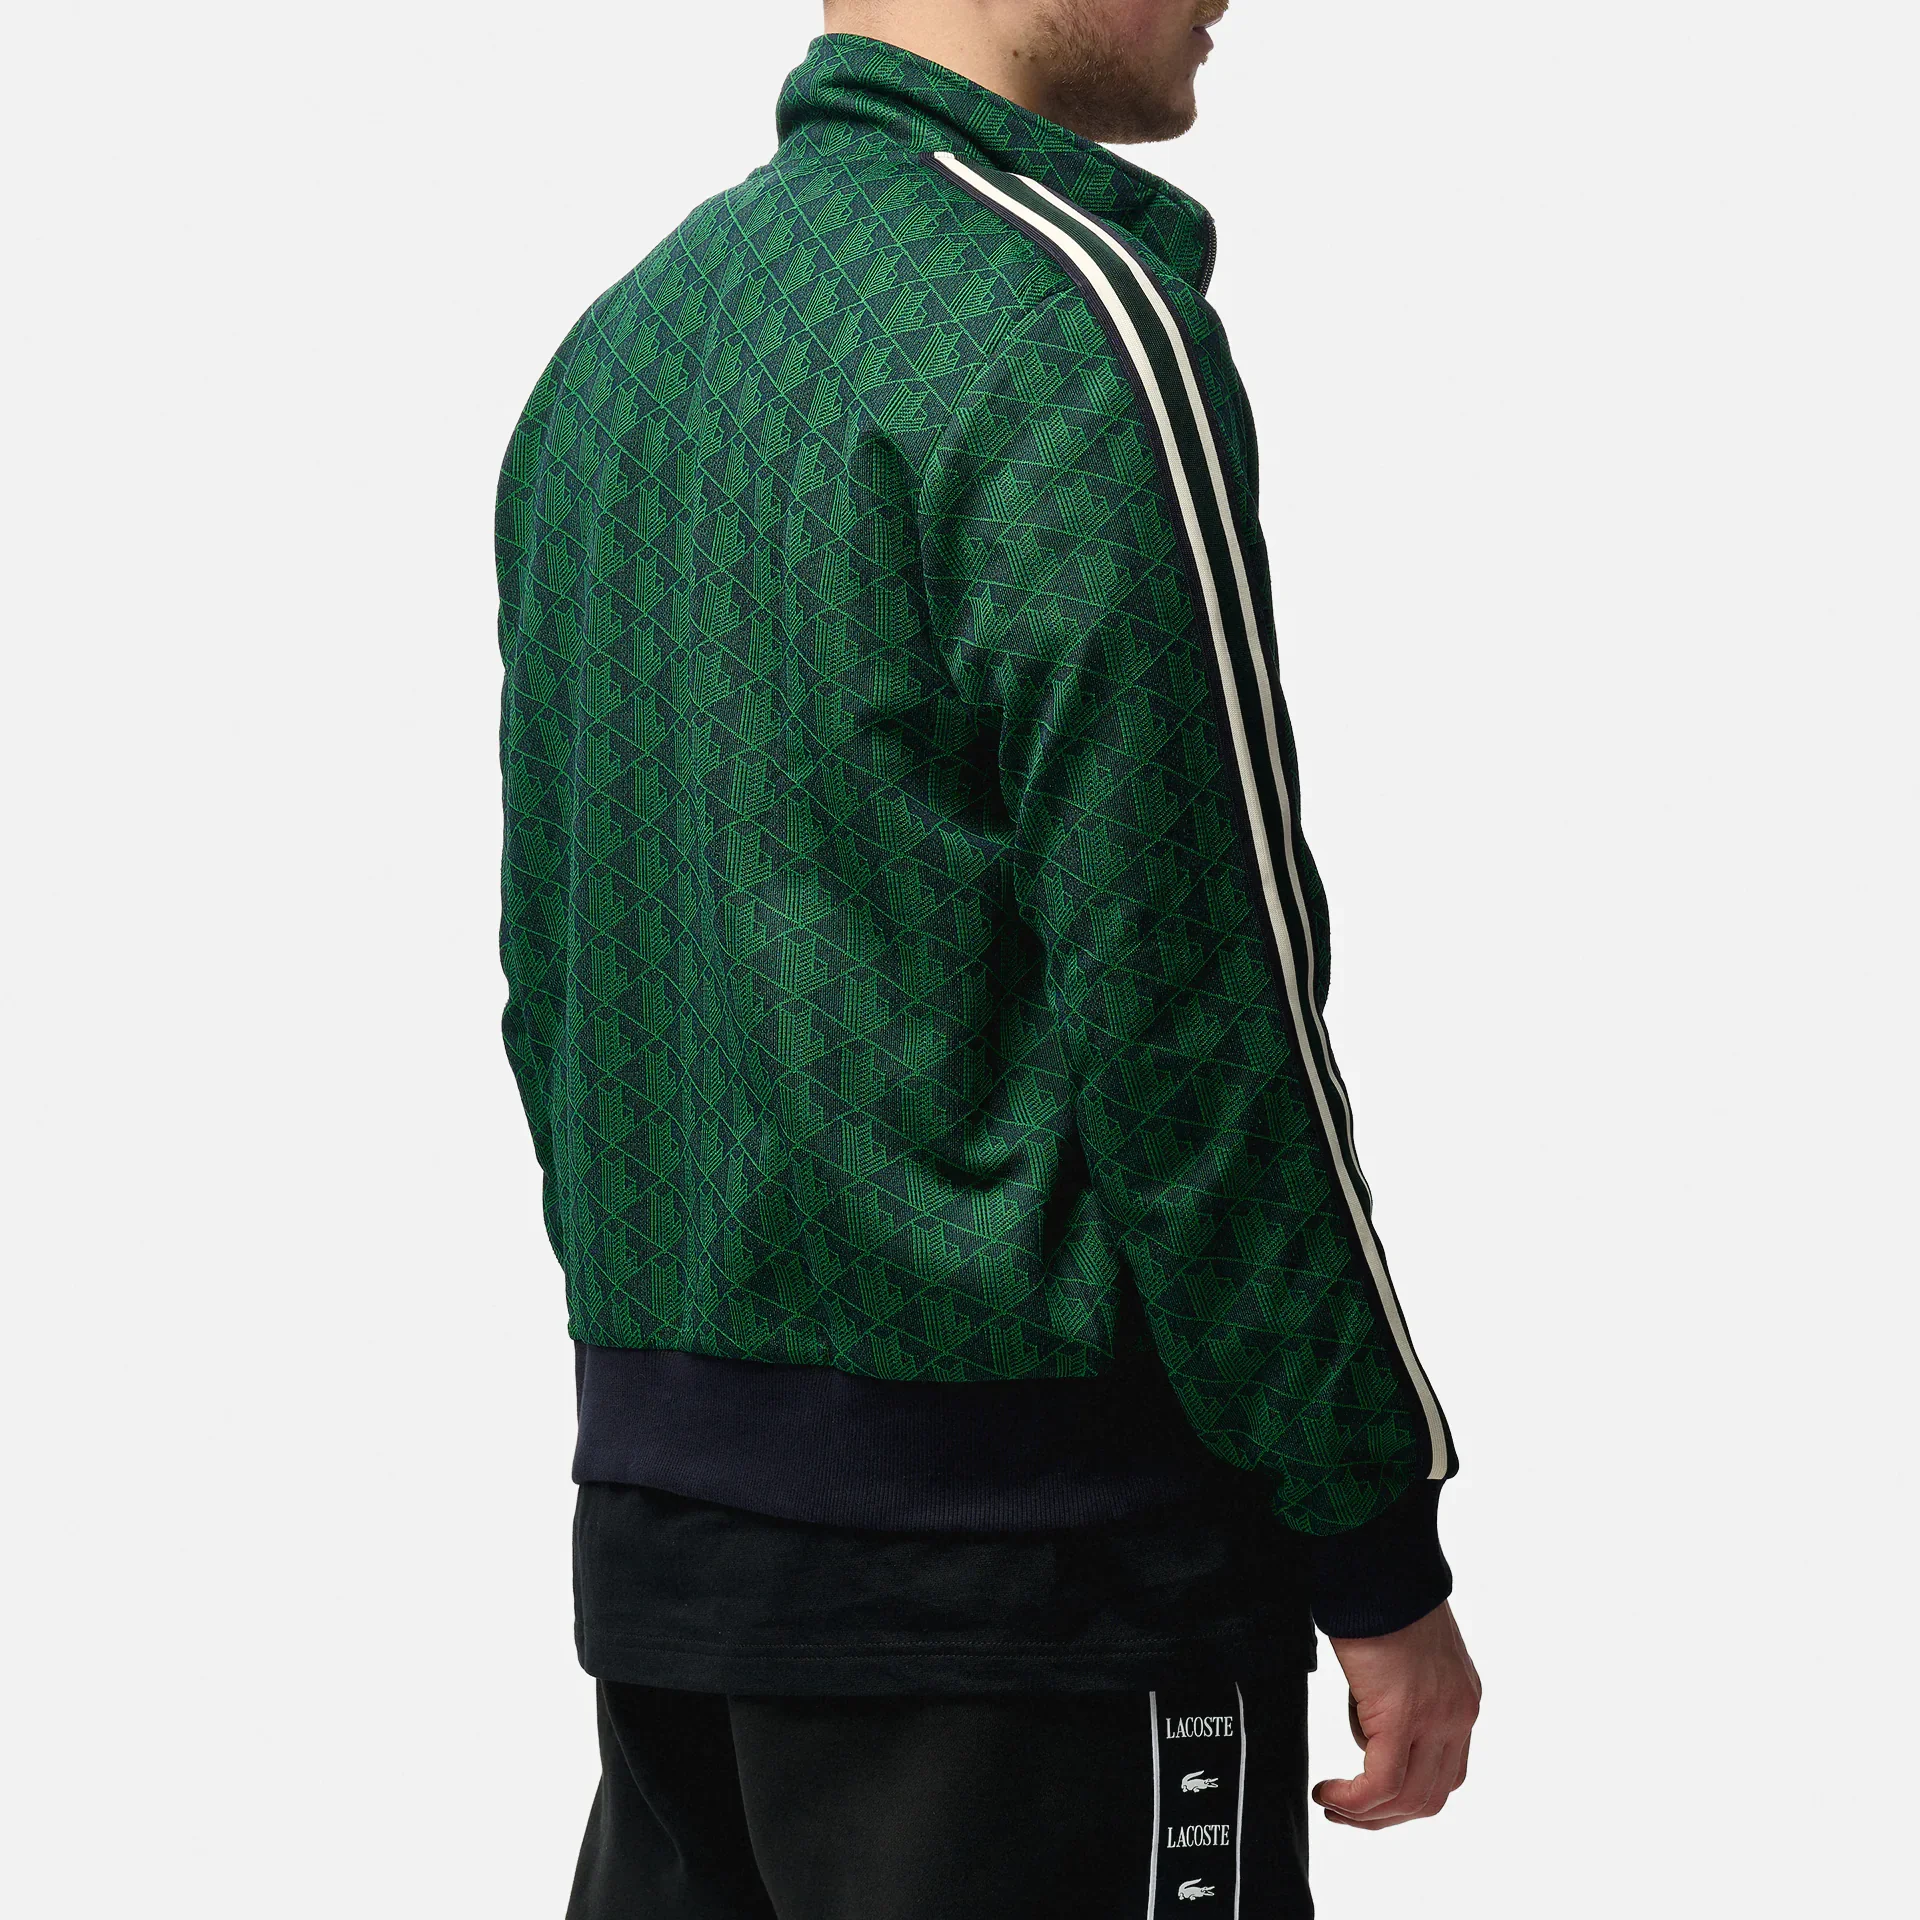  Lacoste Monogram Zipped Sweatshirt Marine/Oseille